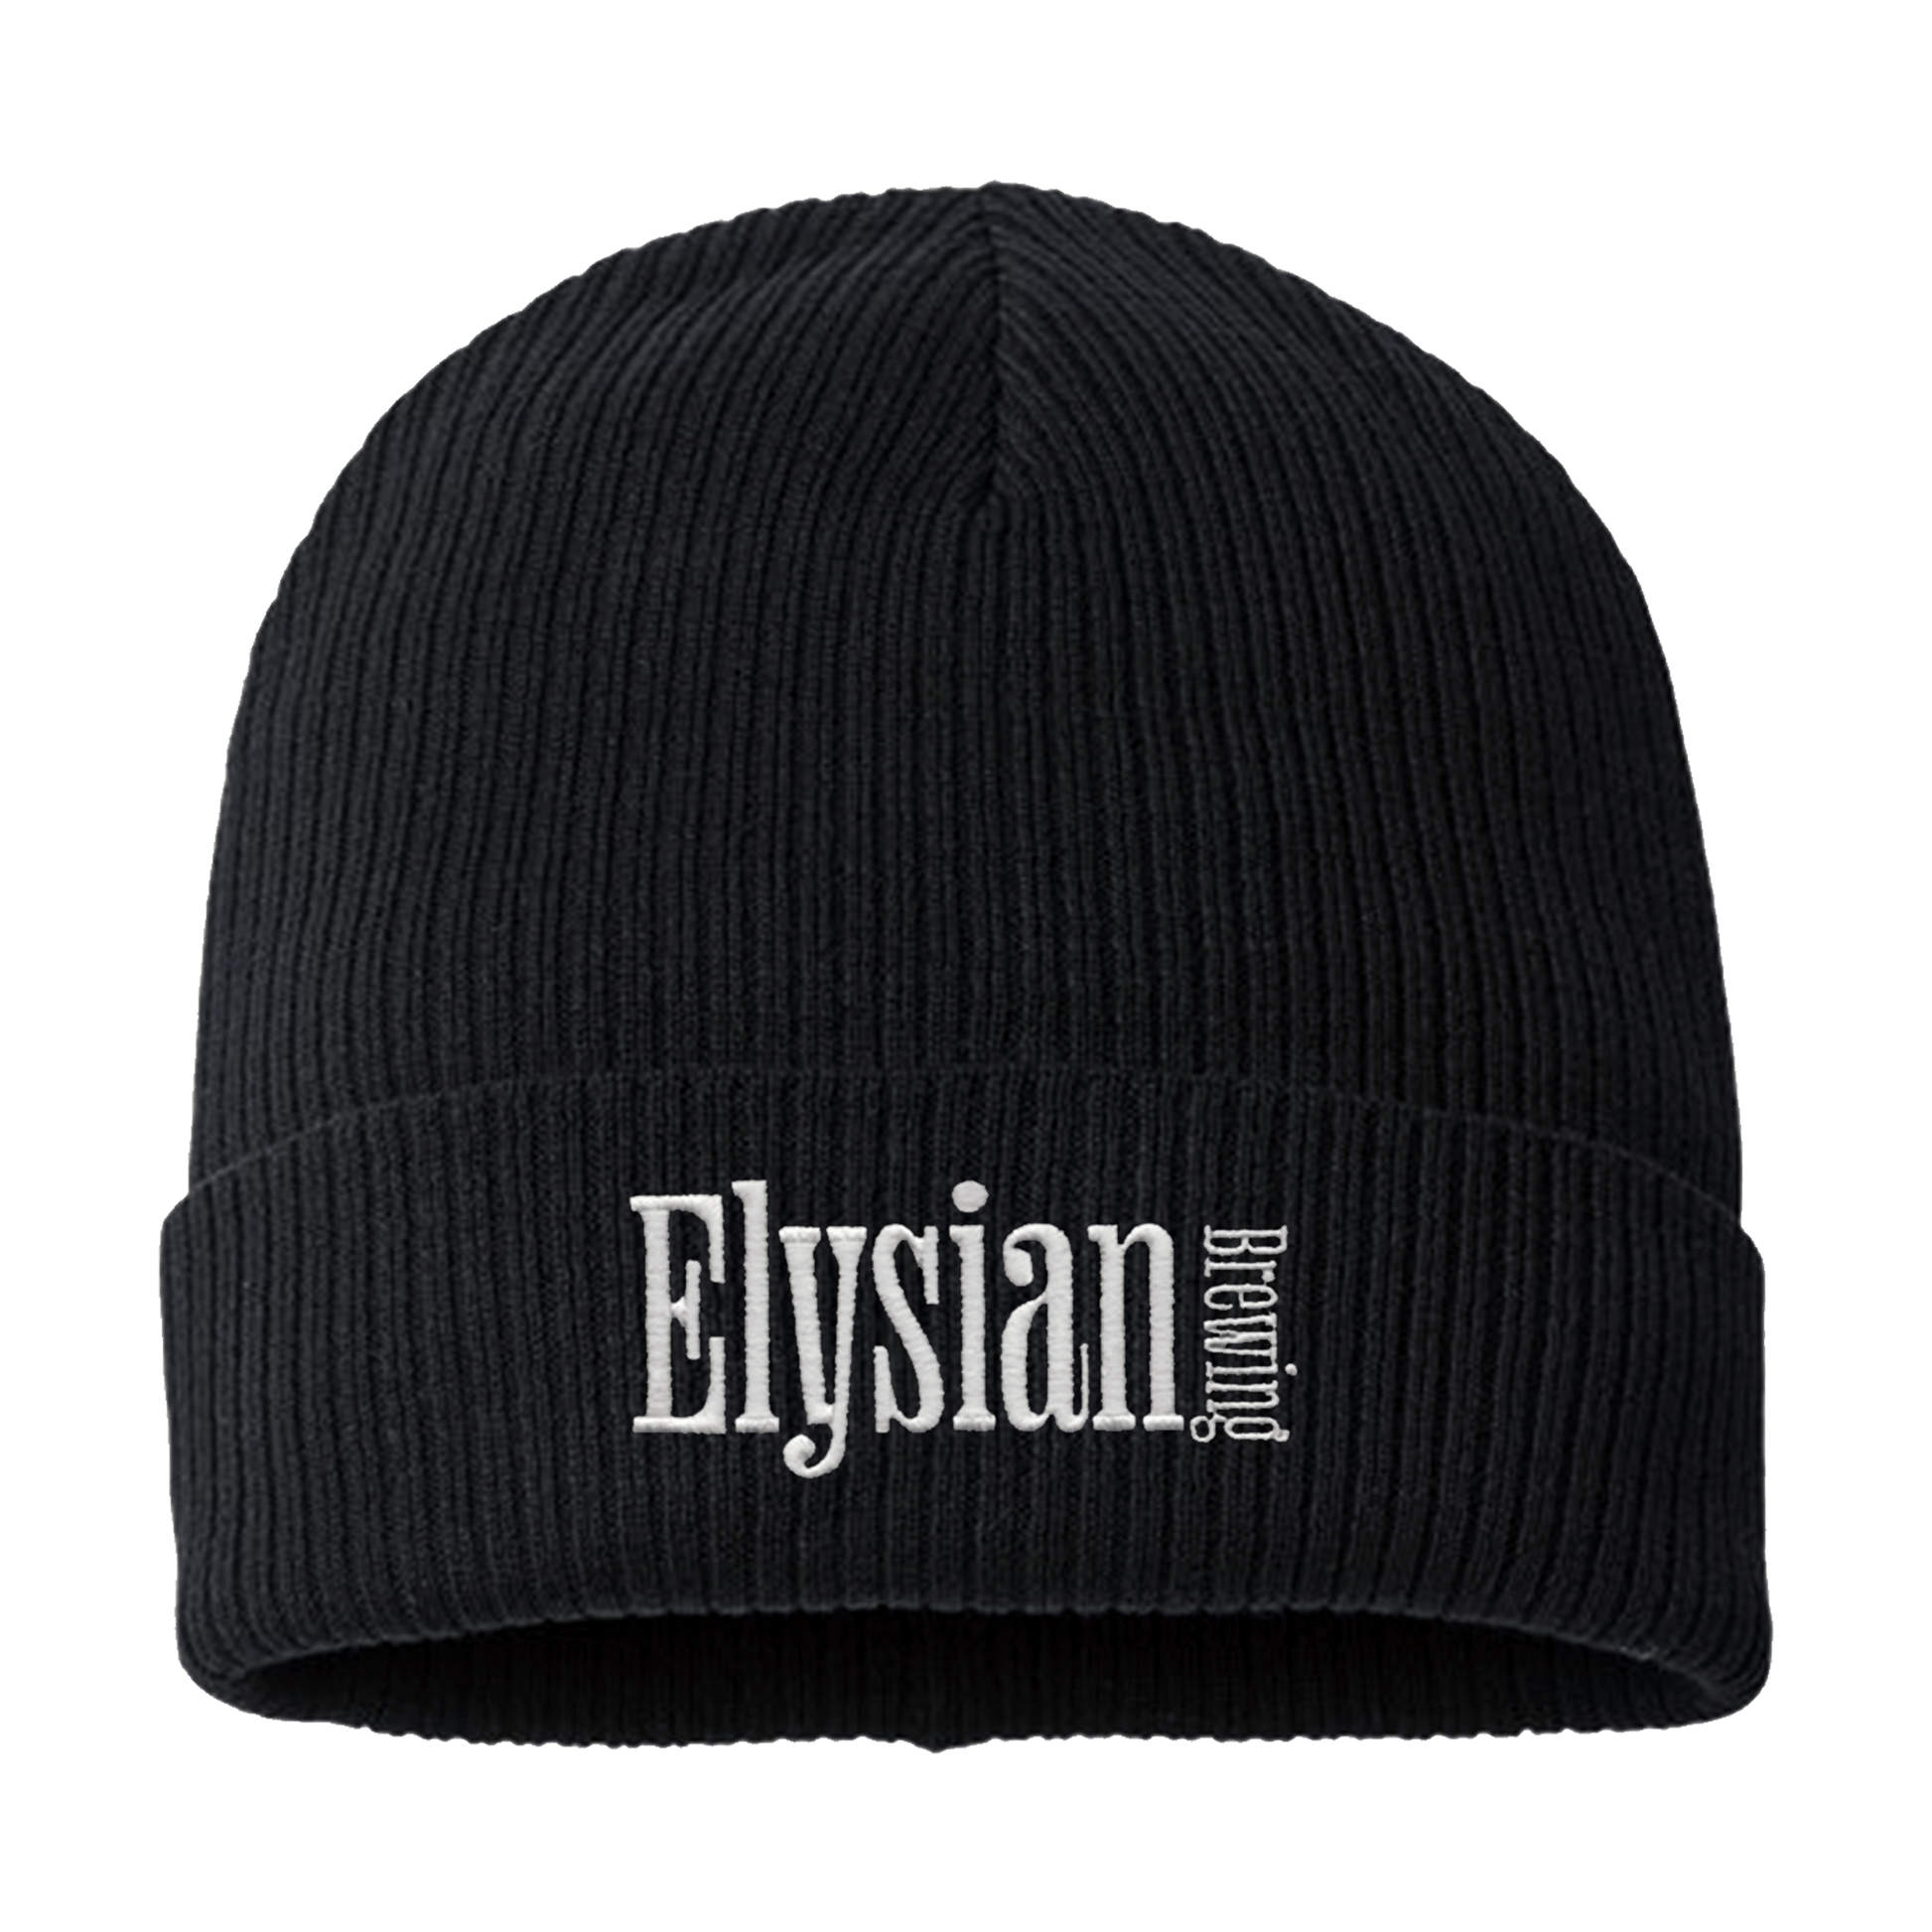 Elysian "Alt" Beanie - Elysian Brewing Company